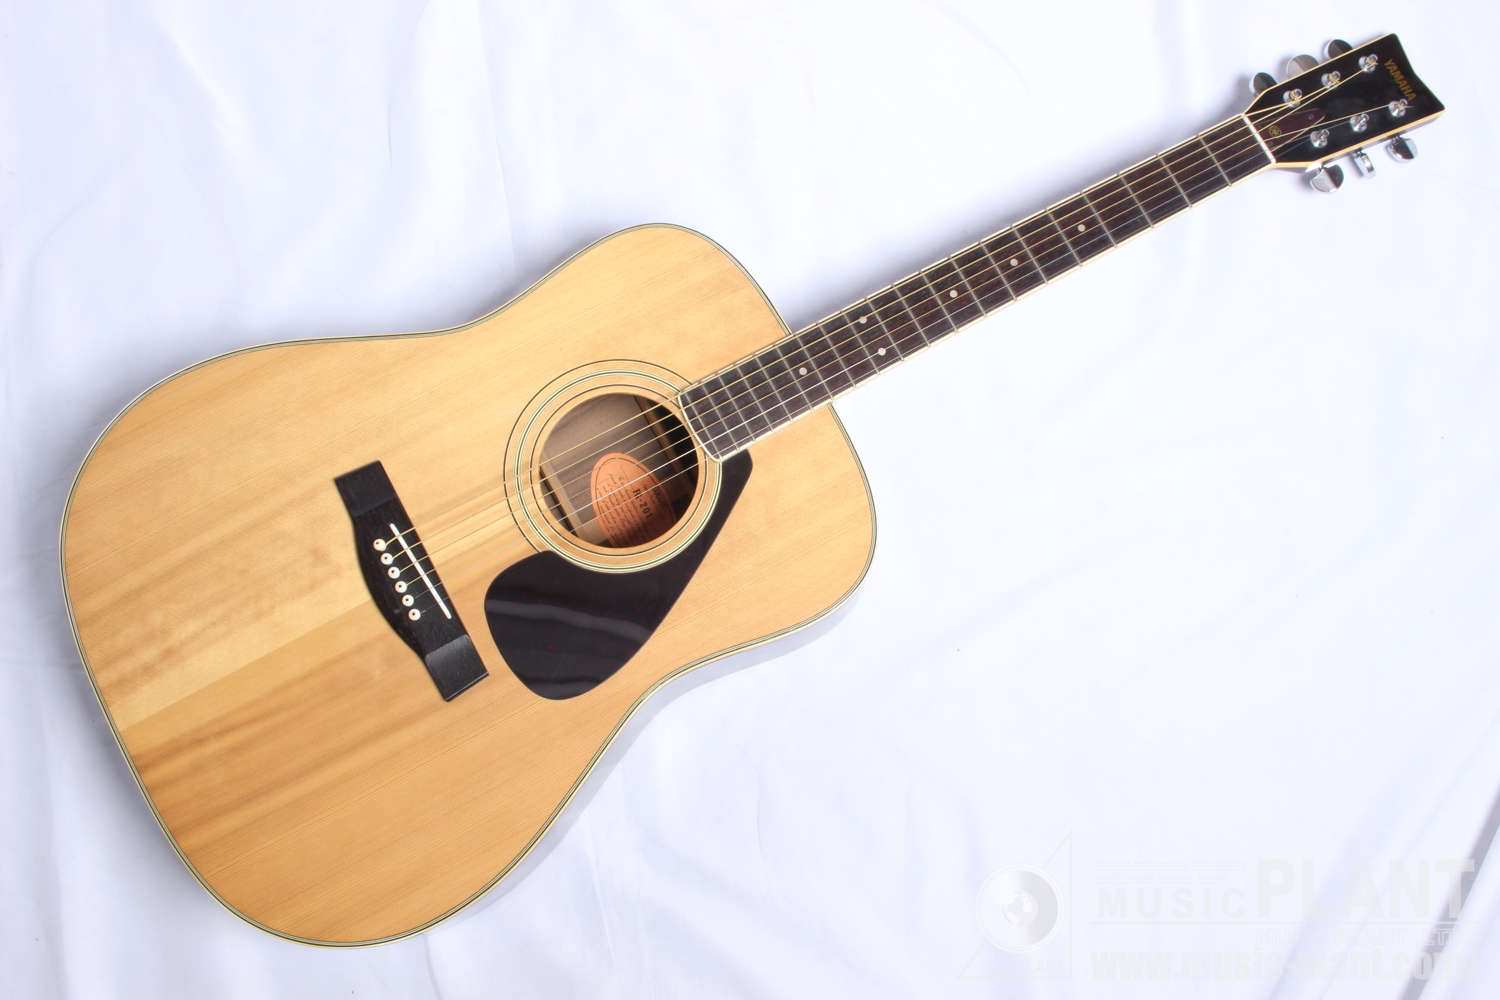 YAMAHA アコースティックギターFG-201中古()売却済みです。あしからずご了承ください。 | MUSIC PLANT WEBSHOP